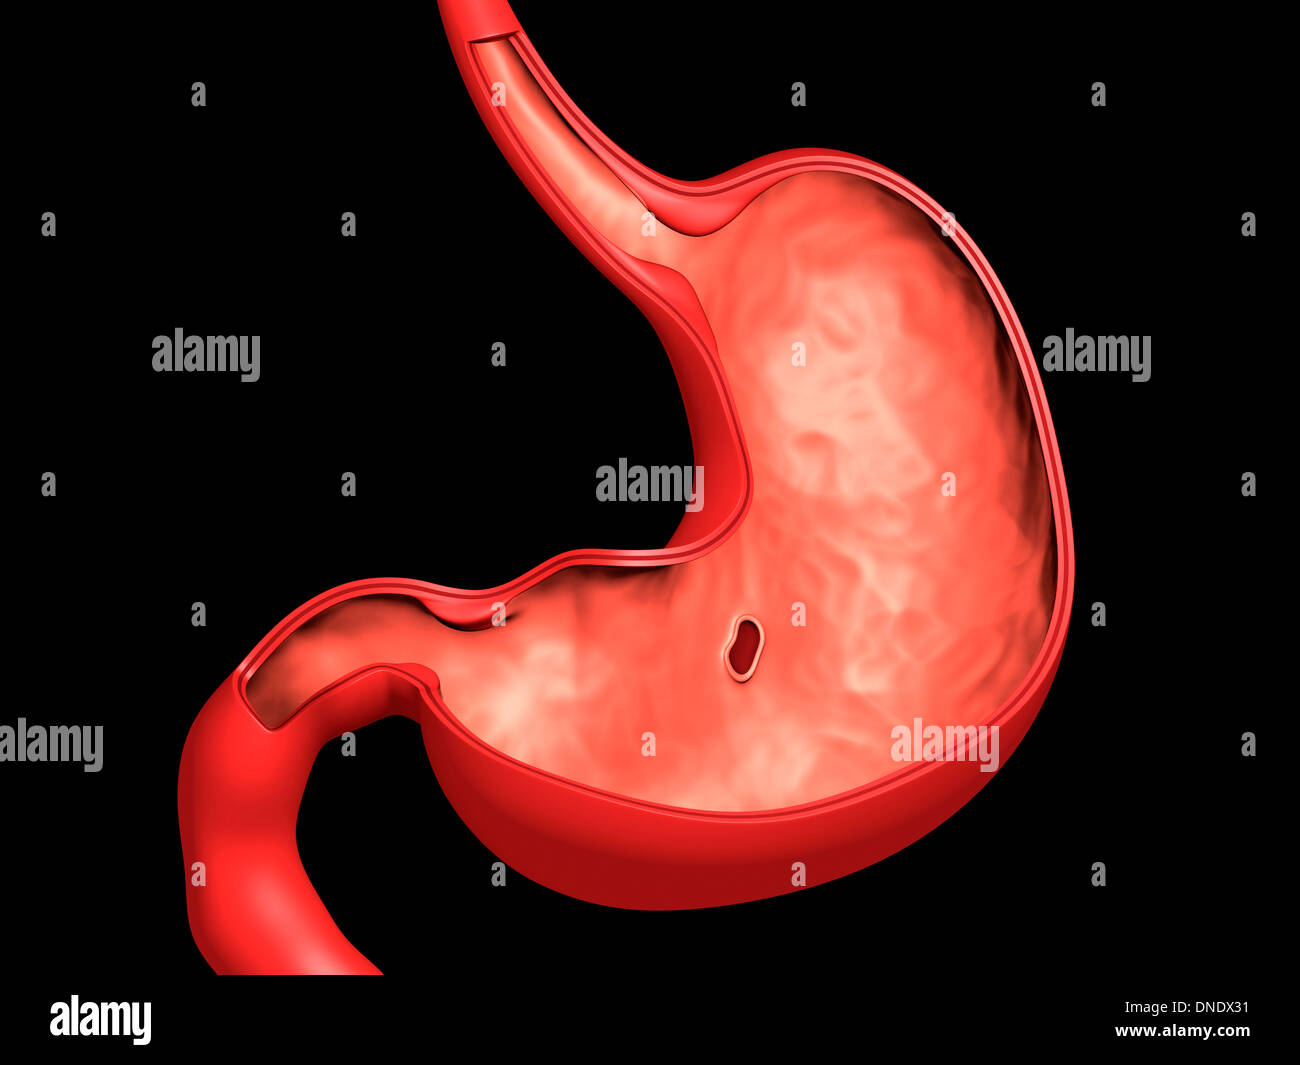 Konzeptbild von Magengeschwüren im menschlichen Magen. Stockfoto